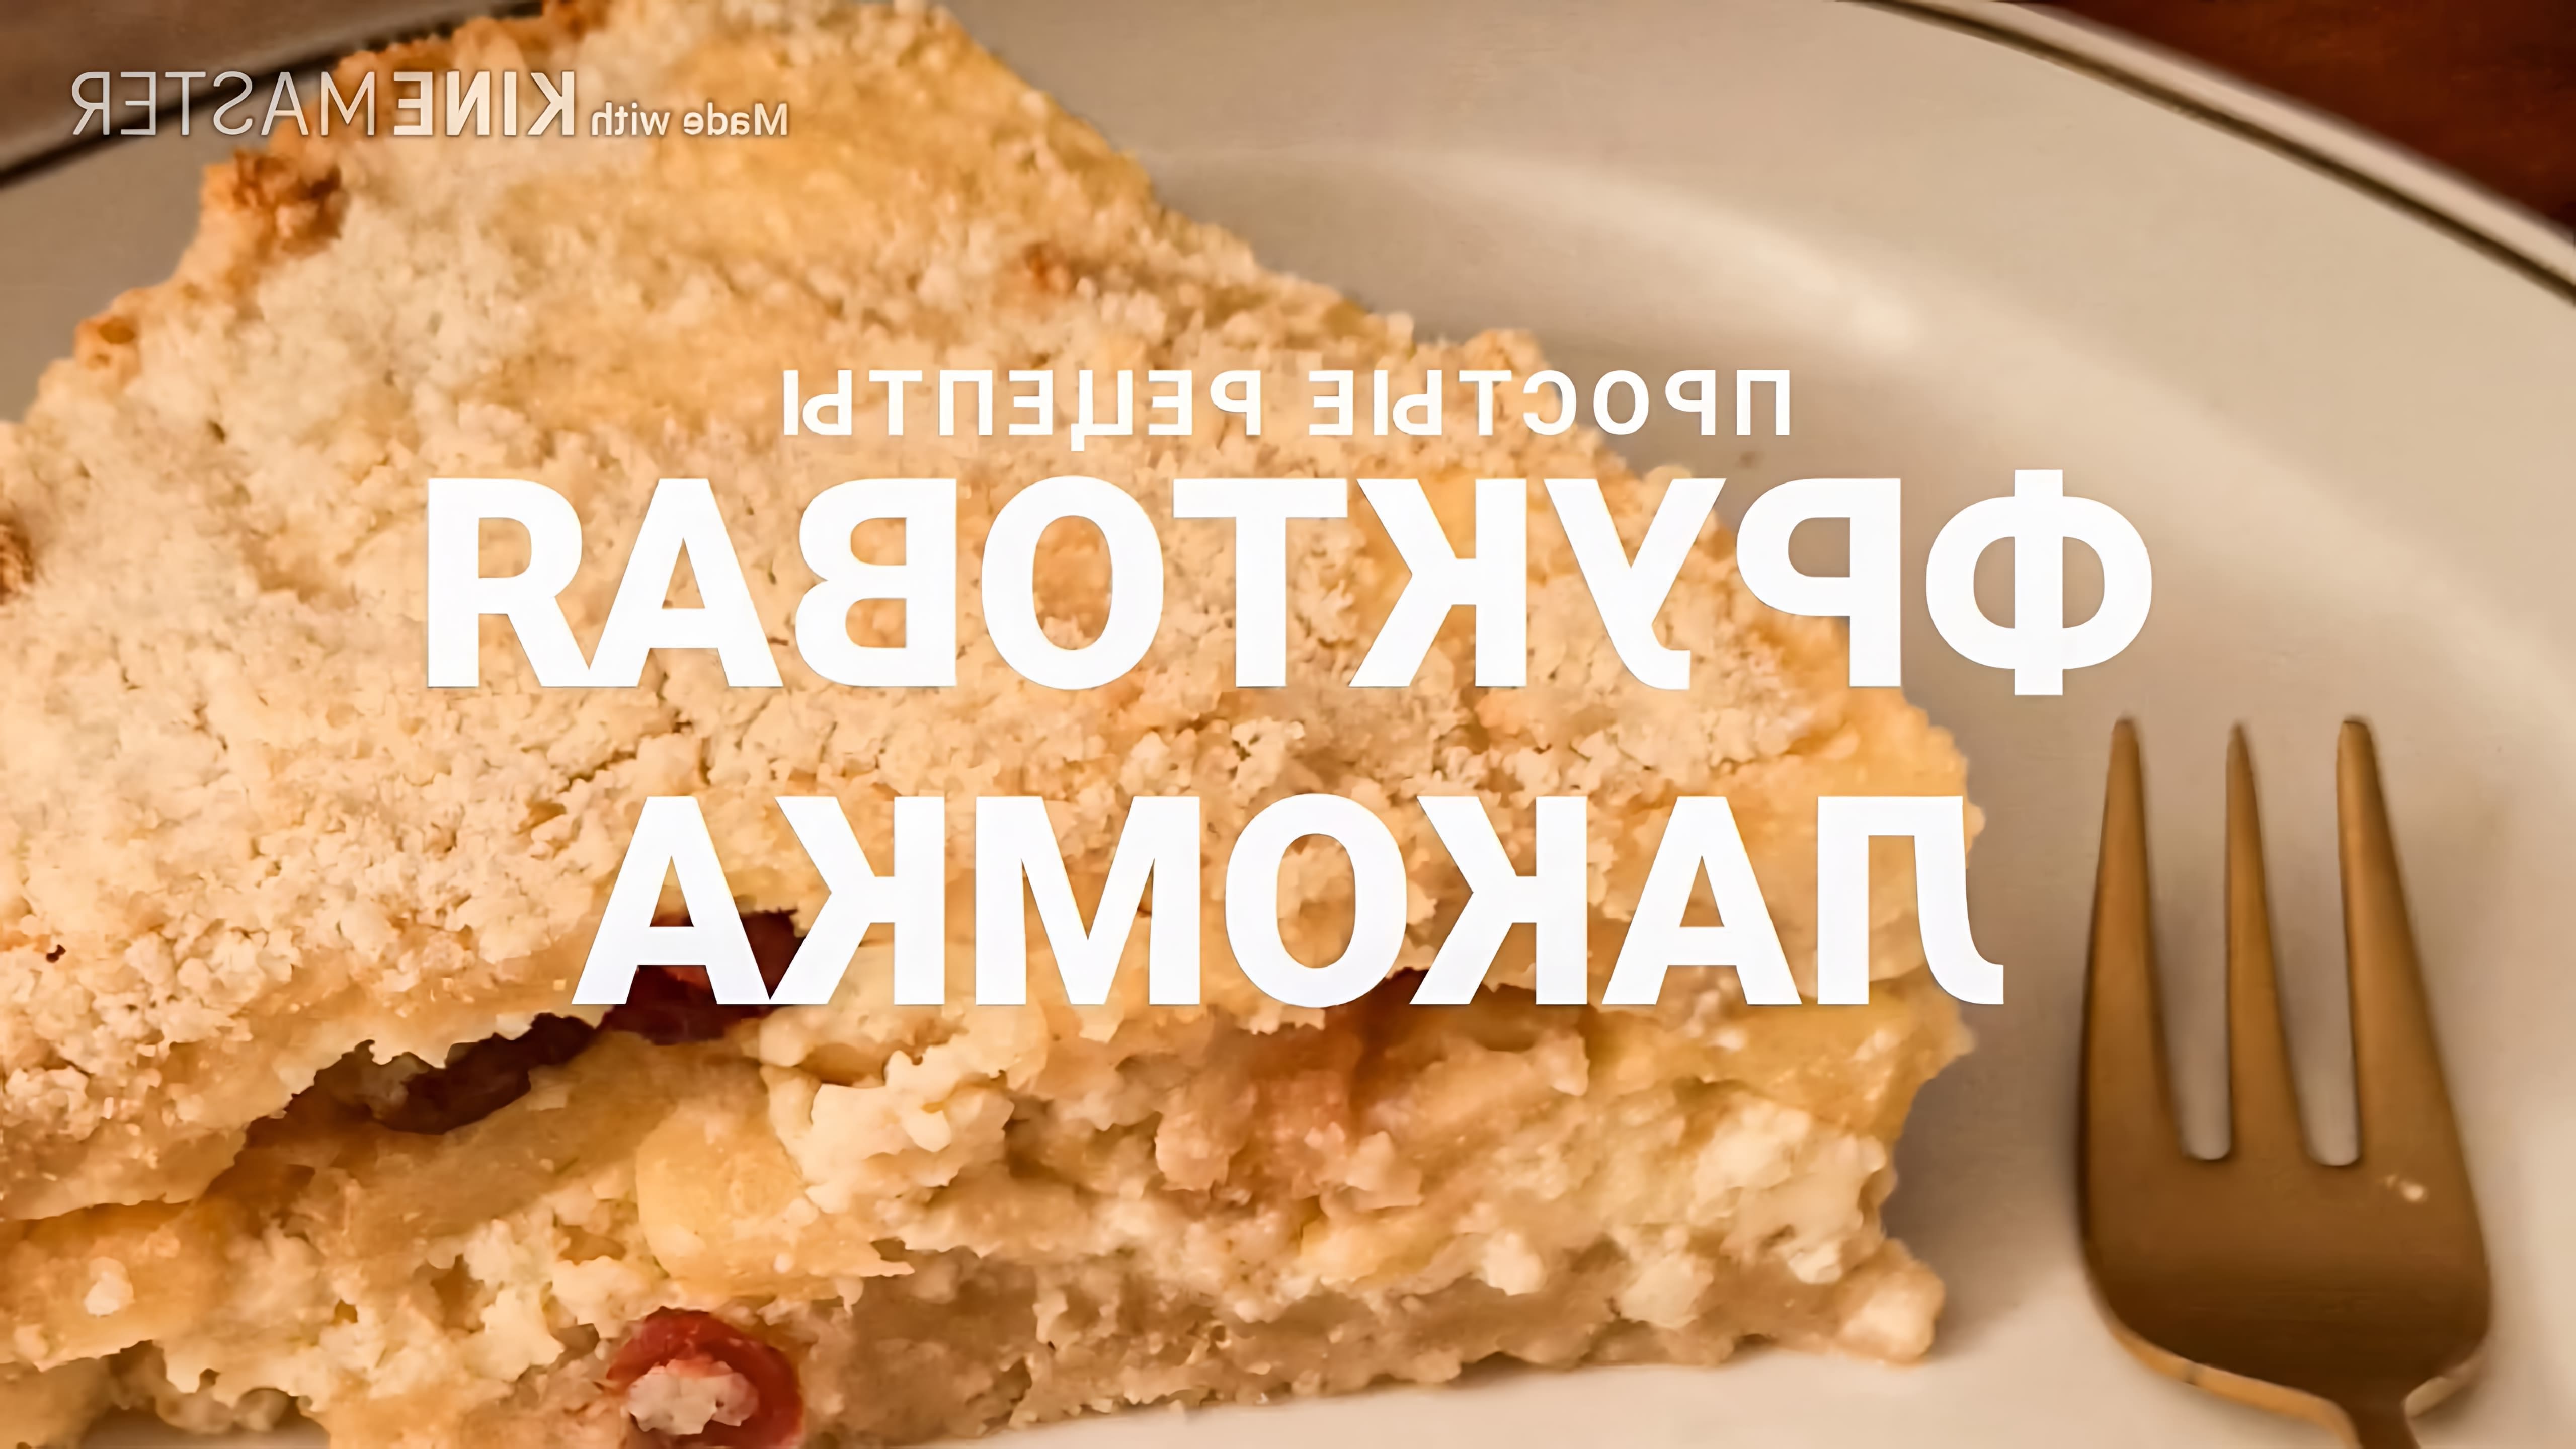 В этом видео демонстрируется рецепт приготовления фруктовой лакомки - быстрого и очень вкусного торта